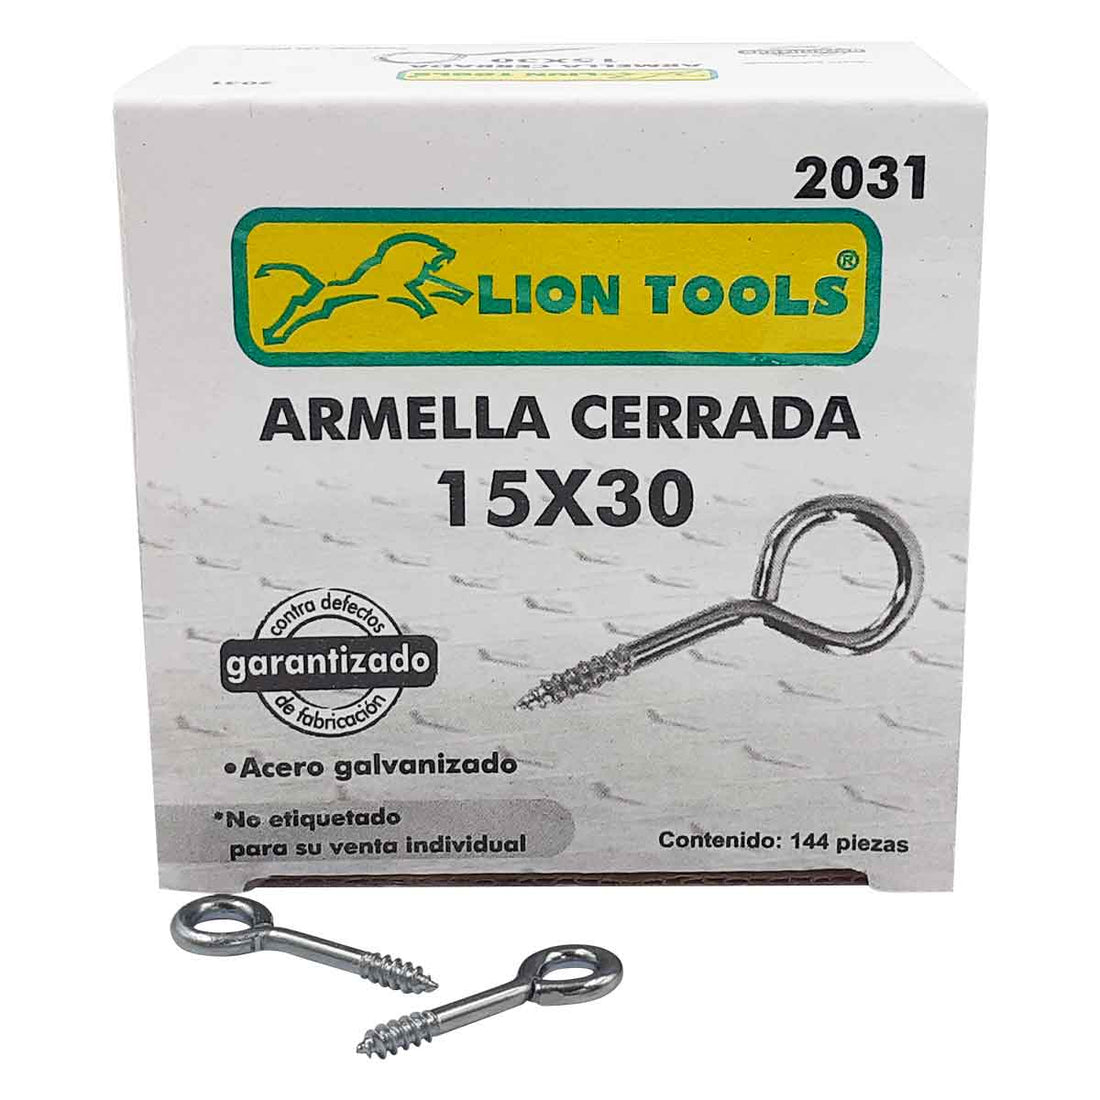 ARMELLA CERRADA 15 X 30 CAJA 144 PZS LION TOOLS